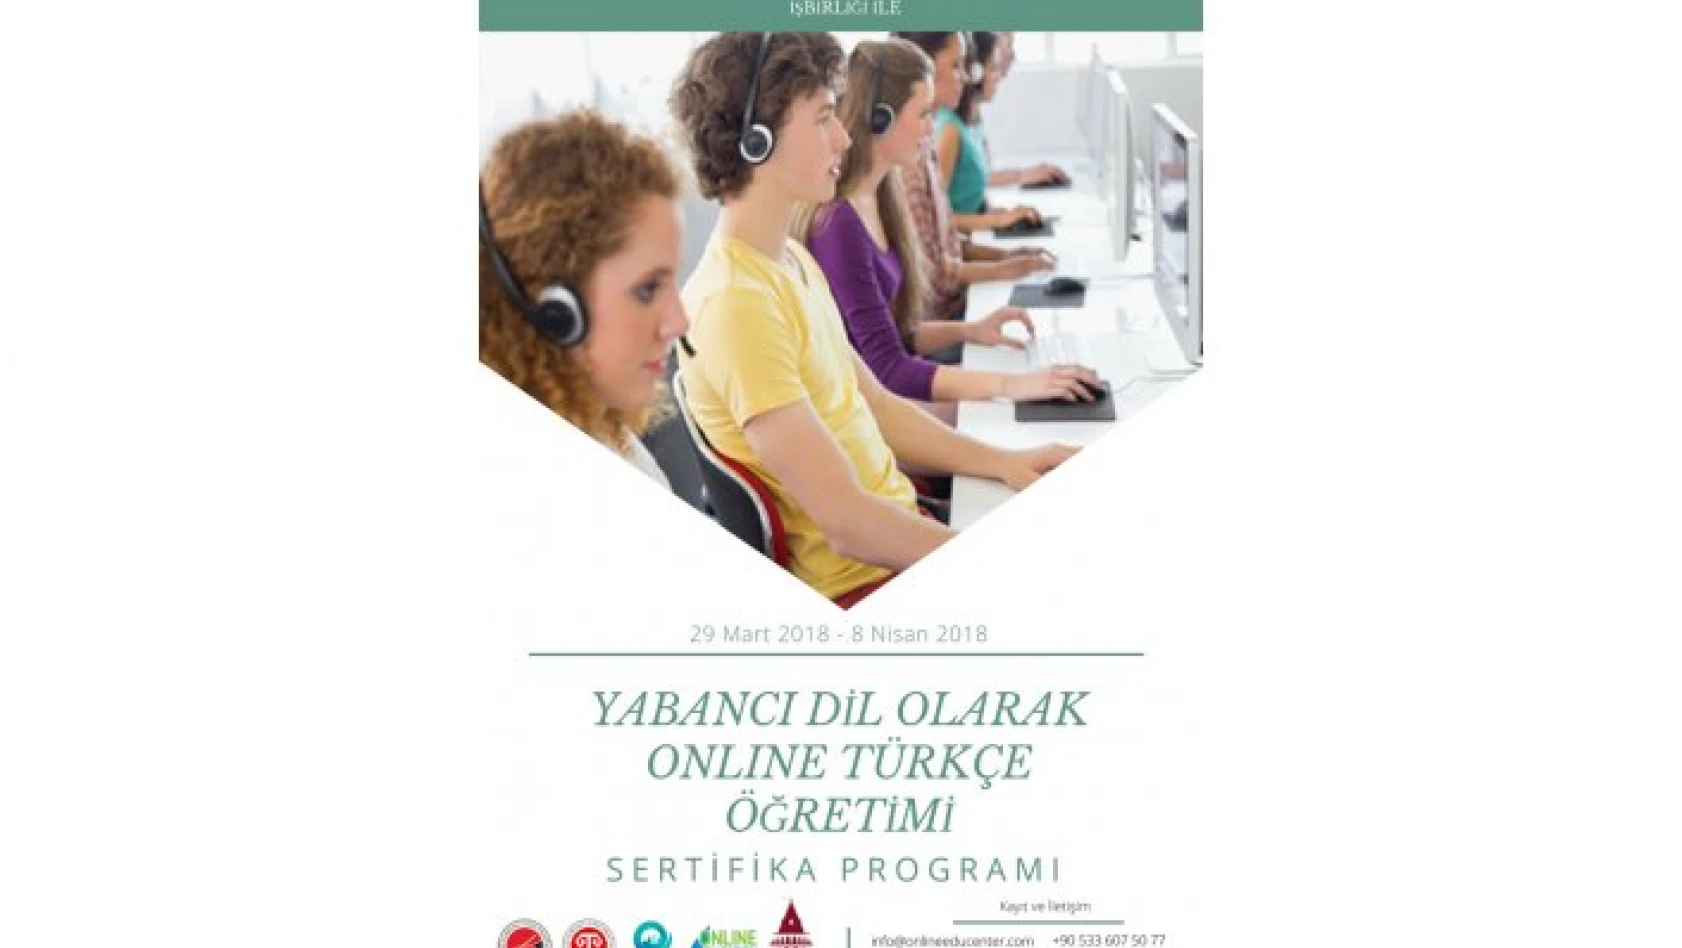 'Yabancı Dil Olarak Online Türkçe Öğretimi Sertifika Programı' düzenlenecek